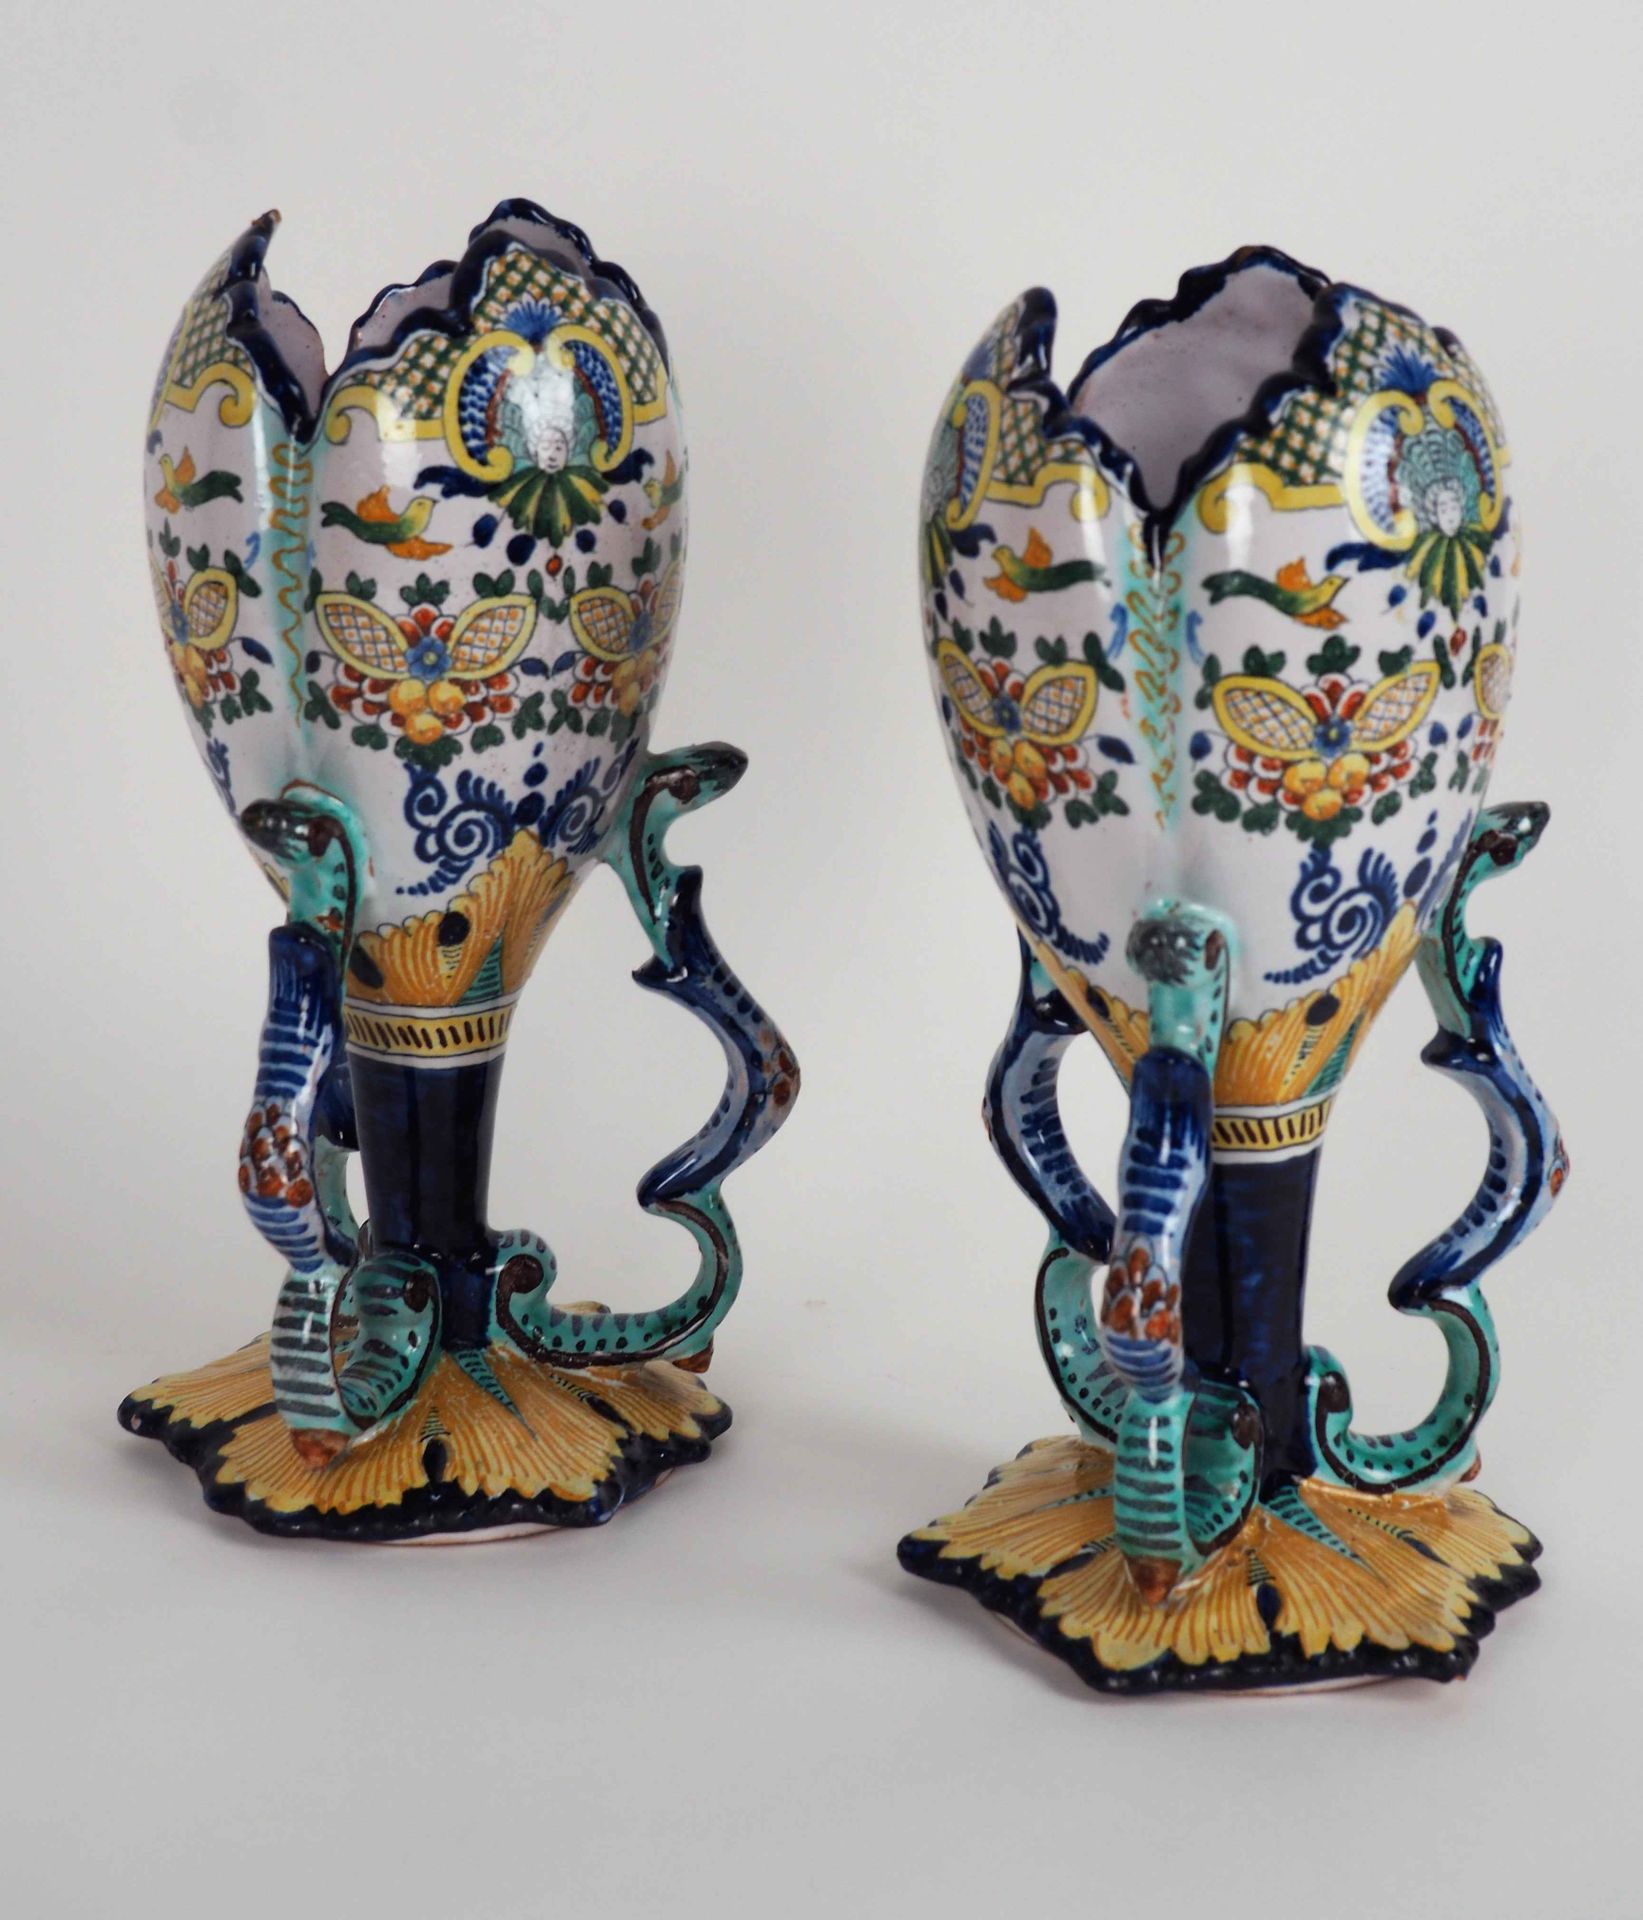 Null 内韦尔，Fabrique E. Cottard

多色陶器花瓶一对

背面的印记

现代工作

高27厘米